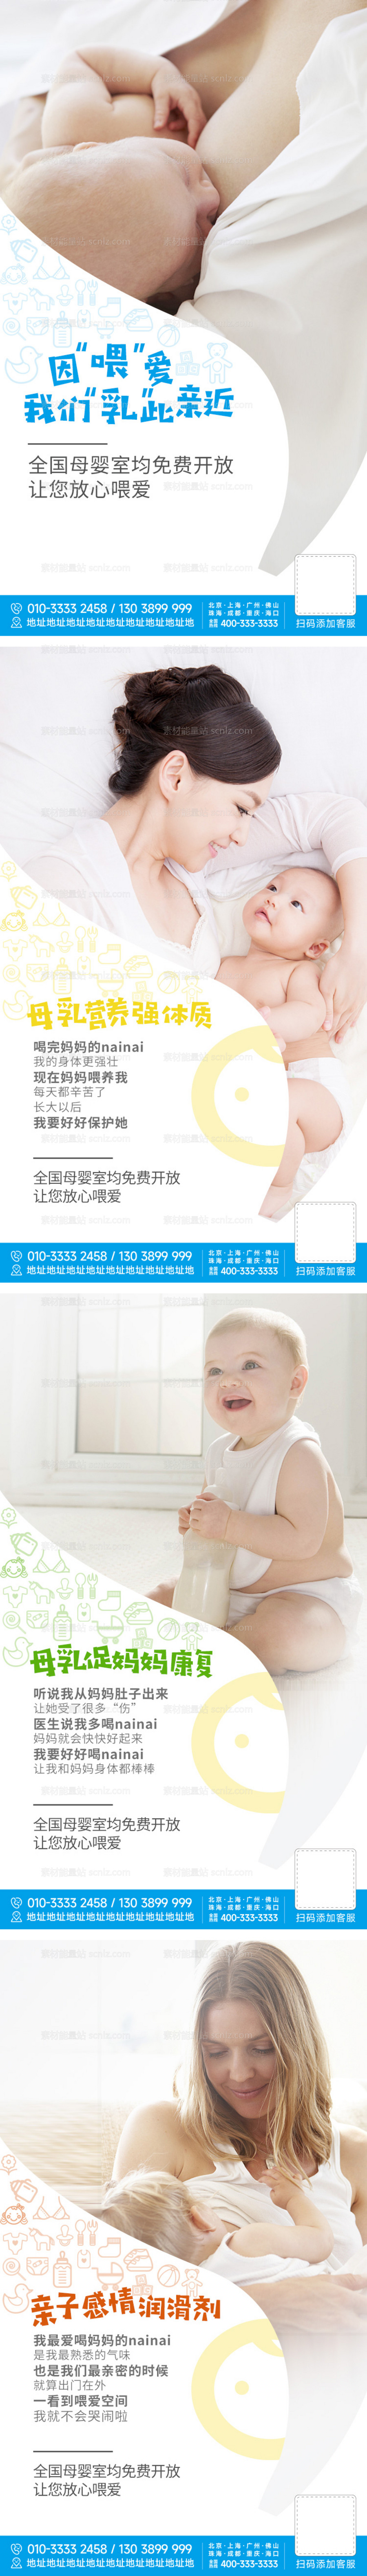 素材能量站-母乳喂养日母婴海报